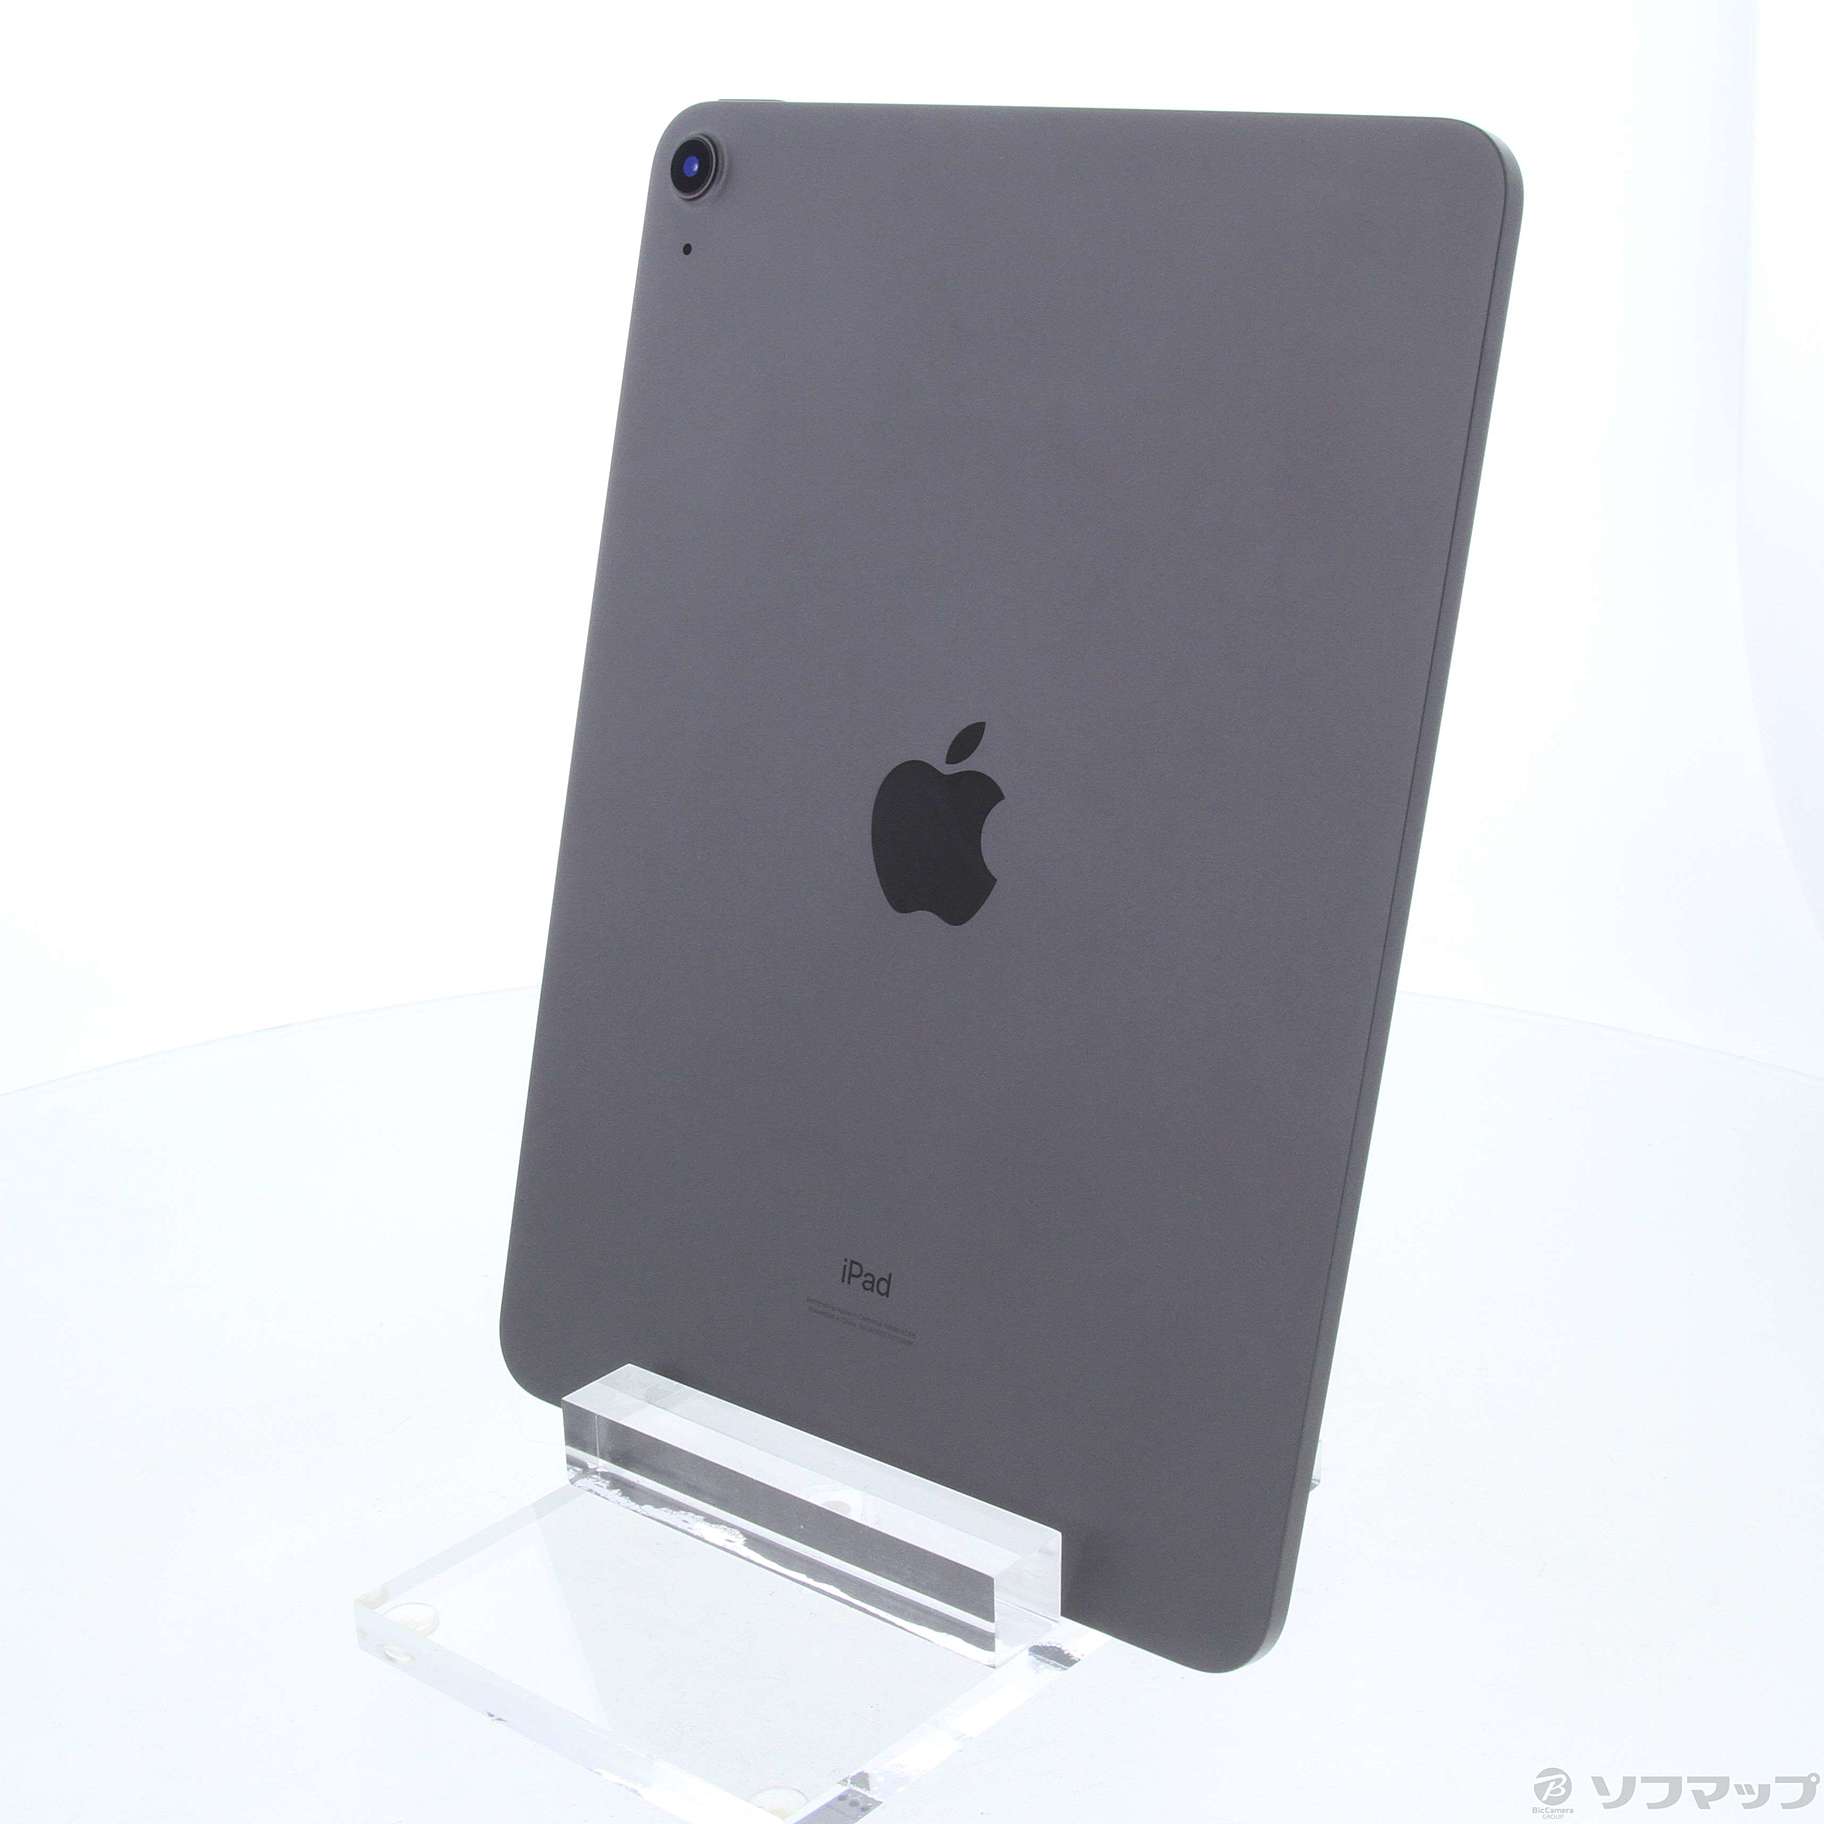 iPad Air 10.9 第4世代 MYFM2J/A スペースグレイ 64GB